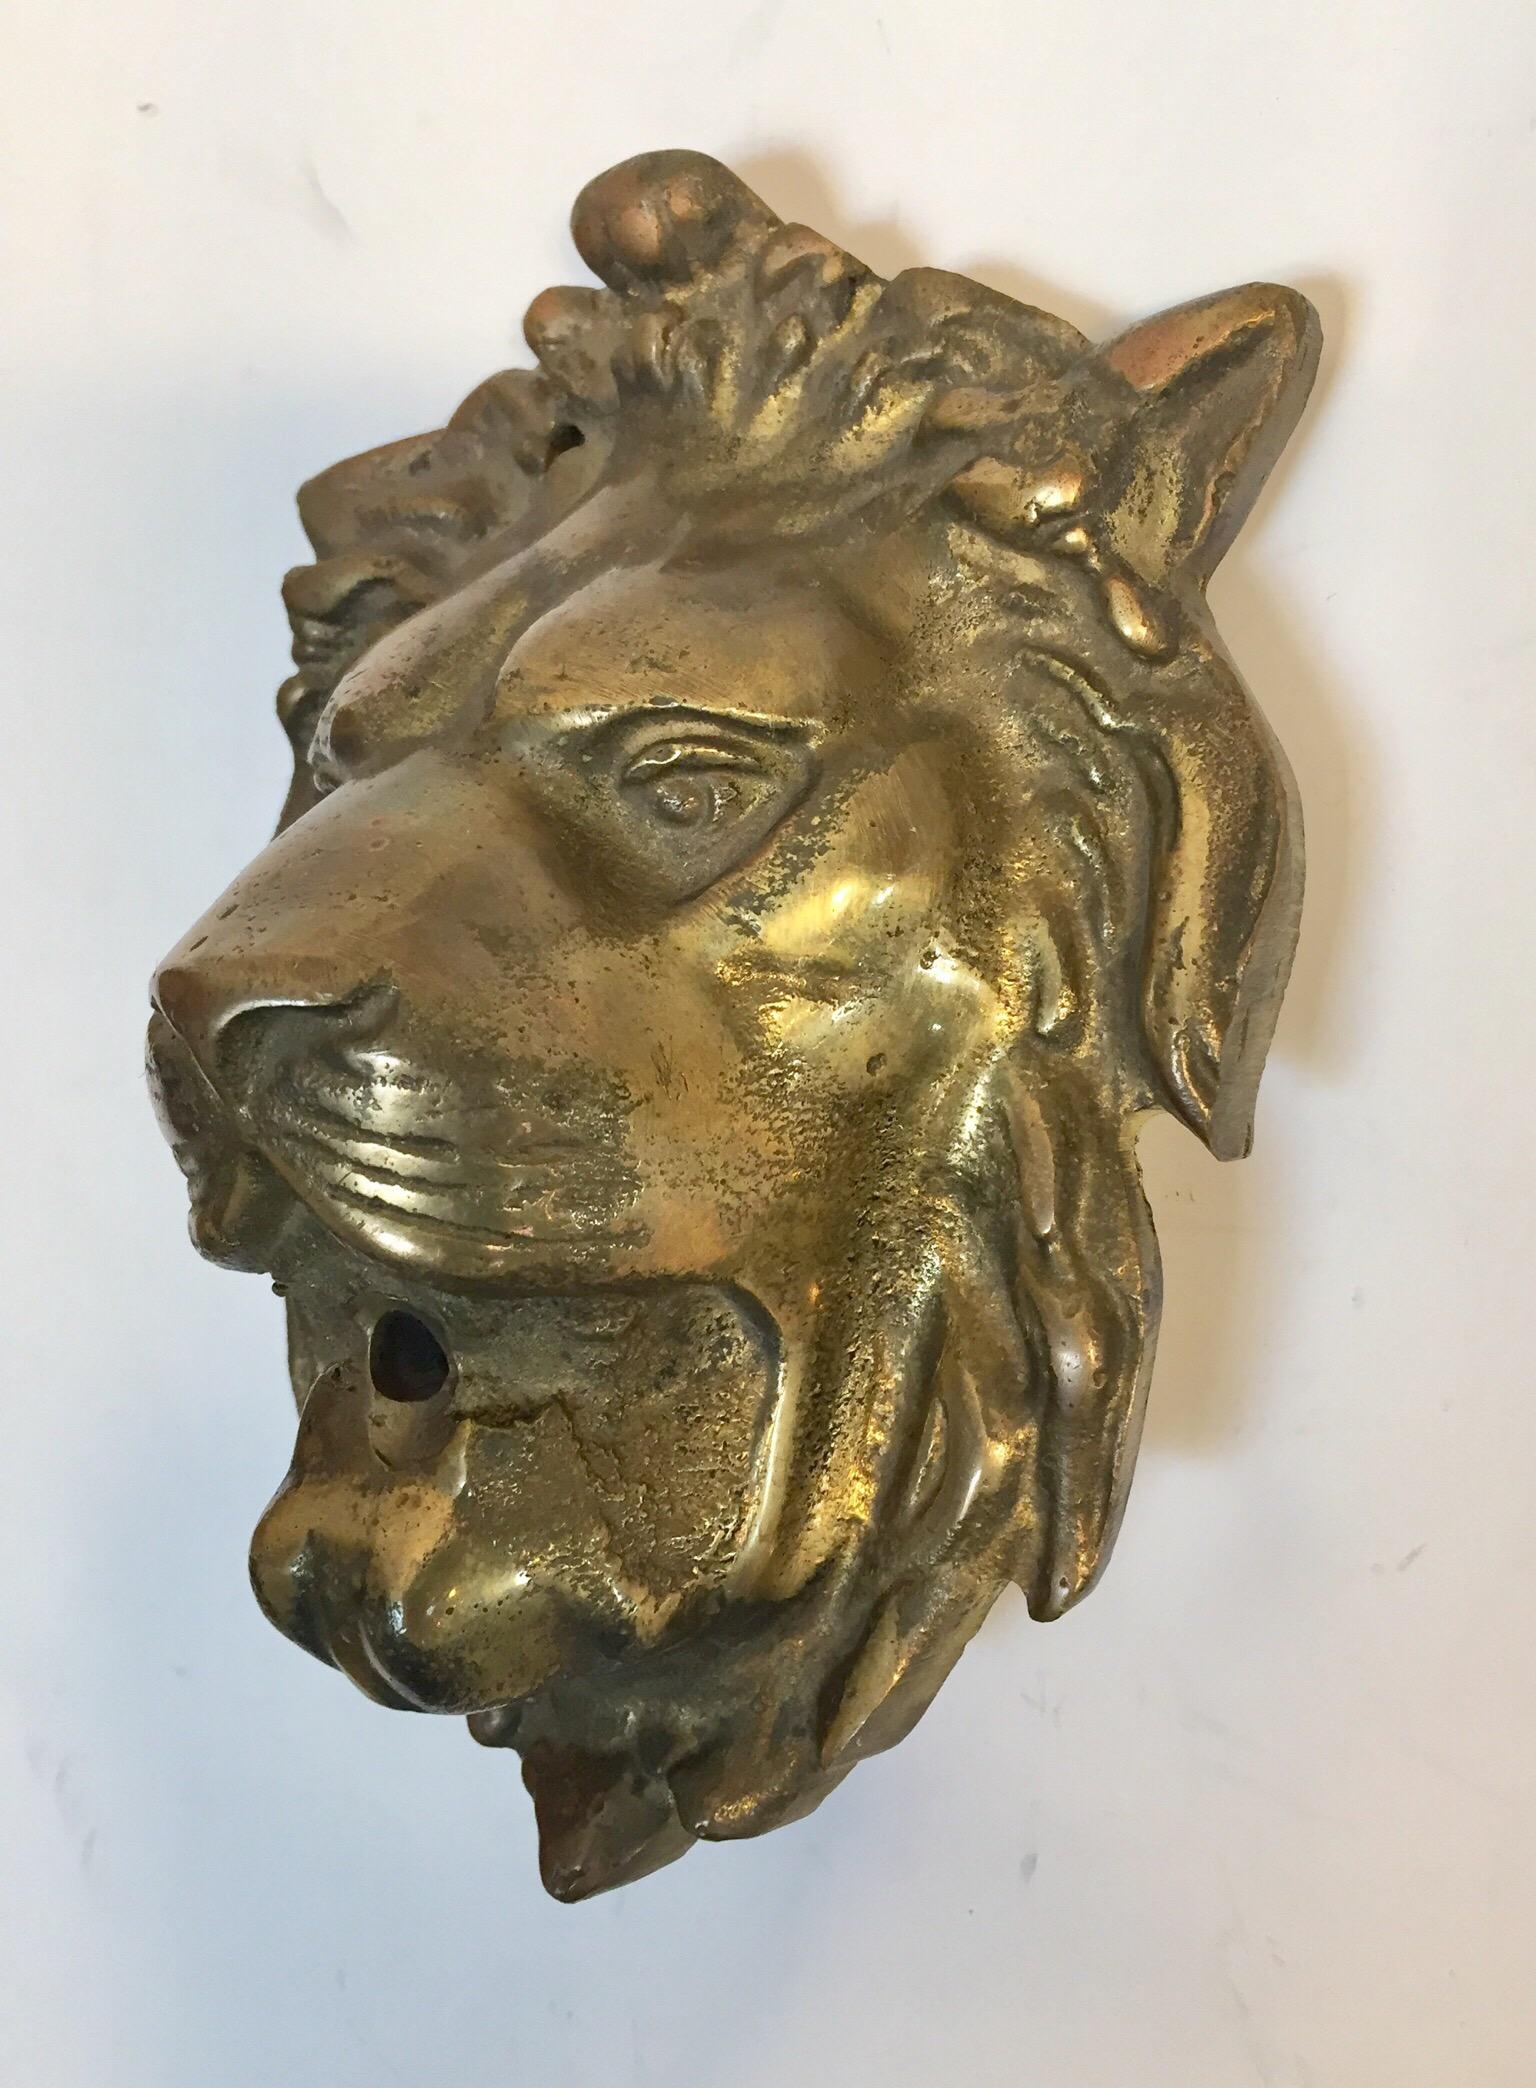 Timeless lion head cast brass fountain garden spout.
Decorative Moroccan accent art bass faucet lion head sculpture.
Nice patina.